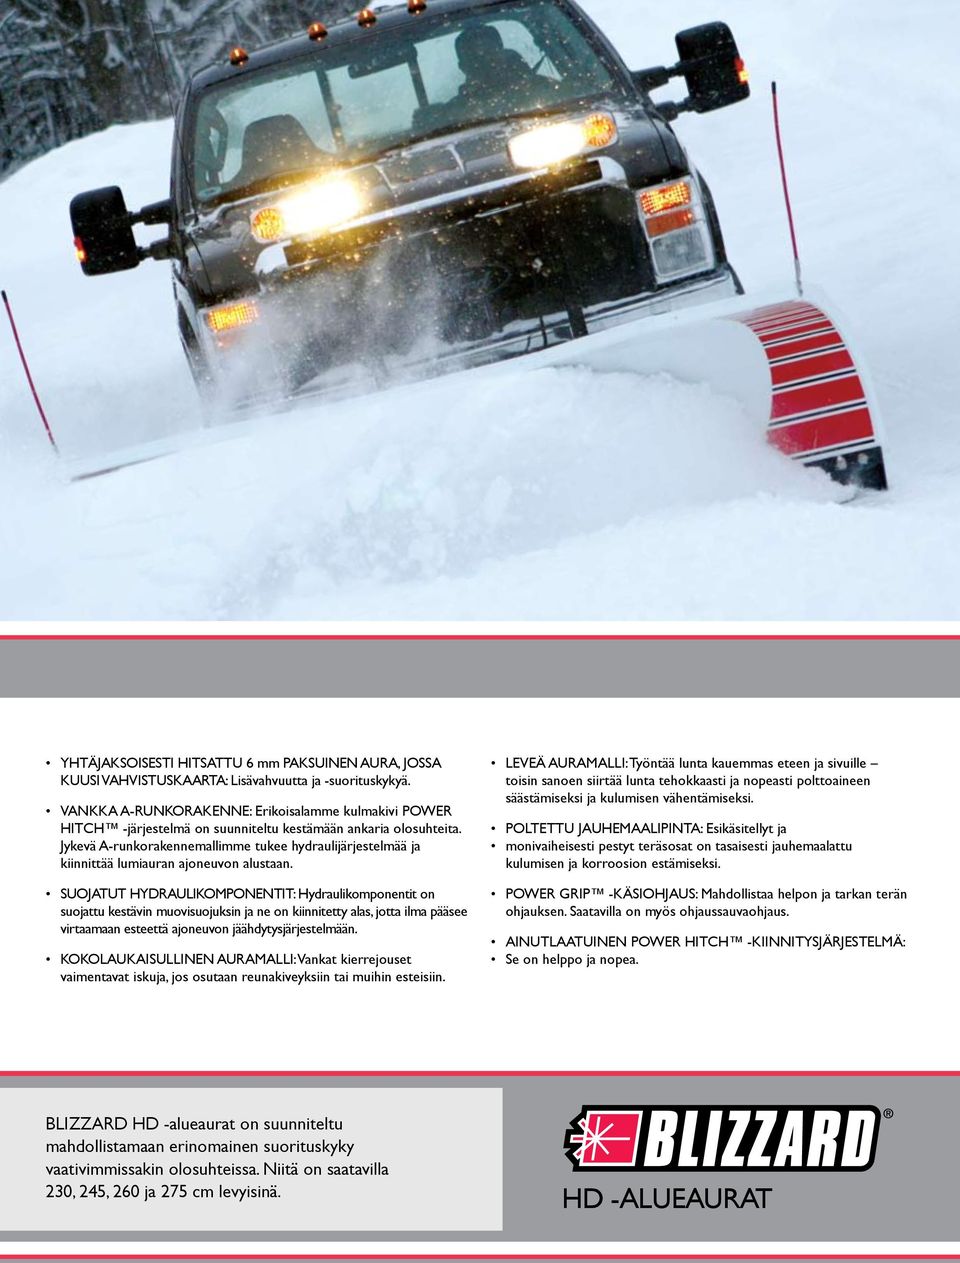 Jykevä A-runkorakennemallimme tukee hydraulijärjestelmää ja kiinnittää lumiauran ajoneuvon alustaan.